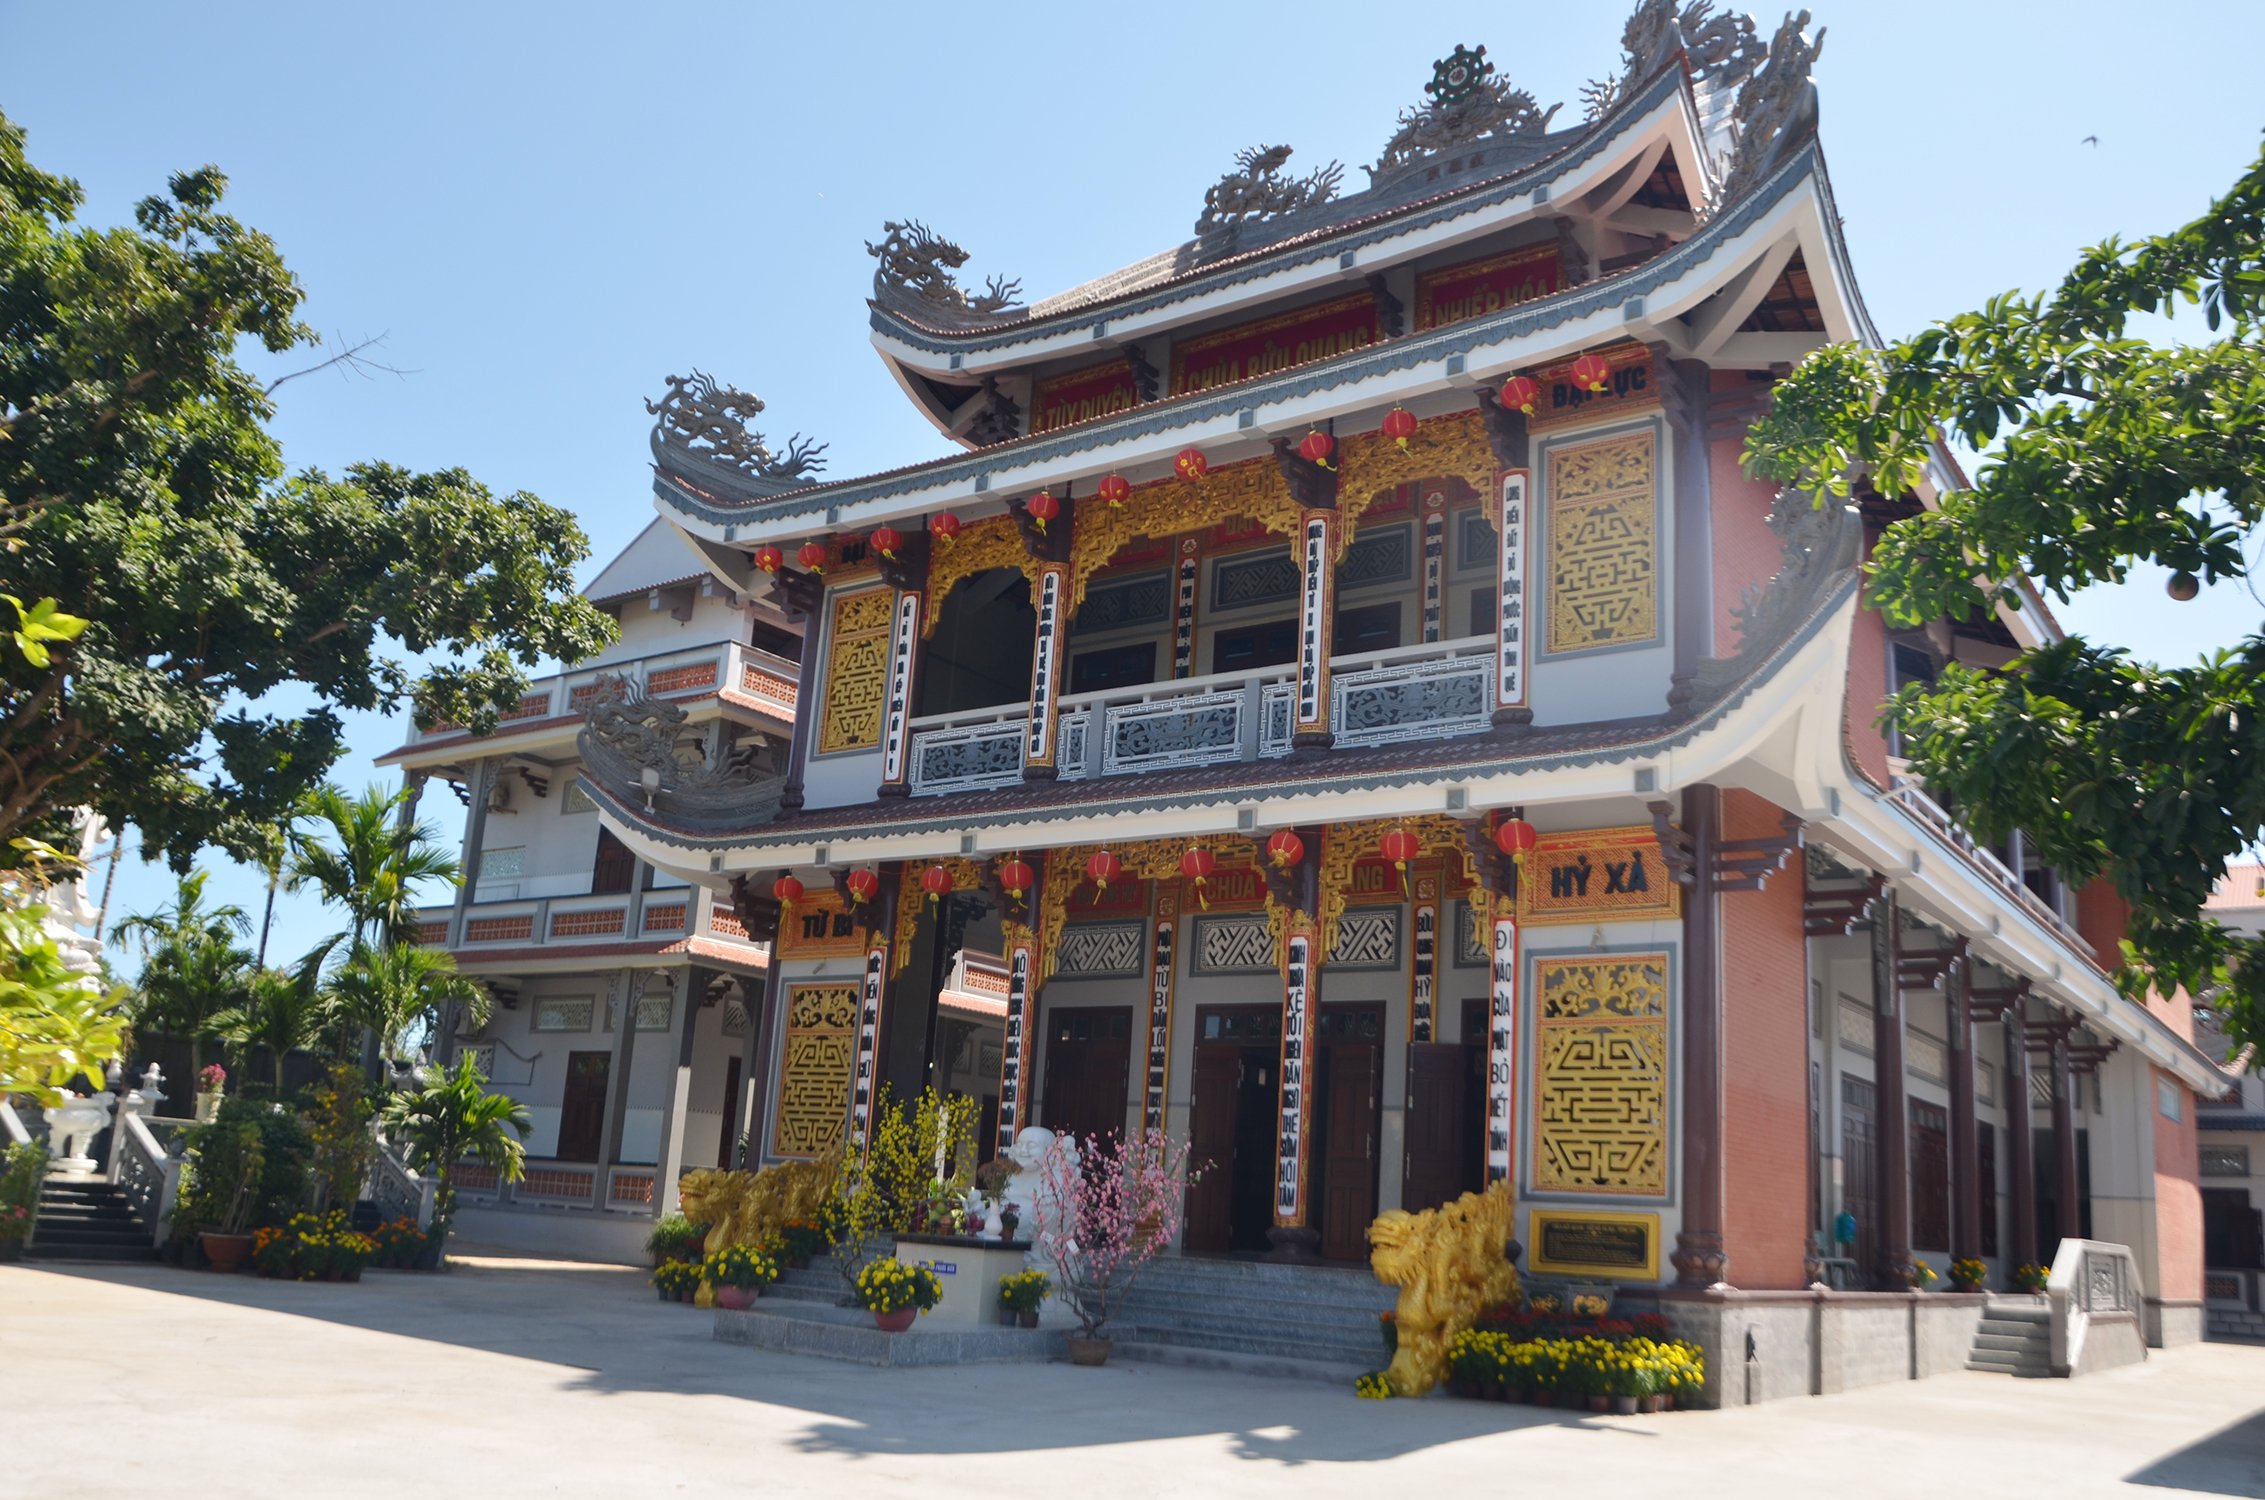 Khám phá 3 ngôi chùa Bửu Quang tại Sài Gòn, Đồng Nai và Vũng Tàu